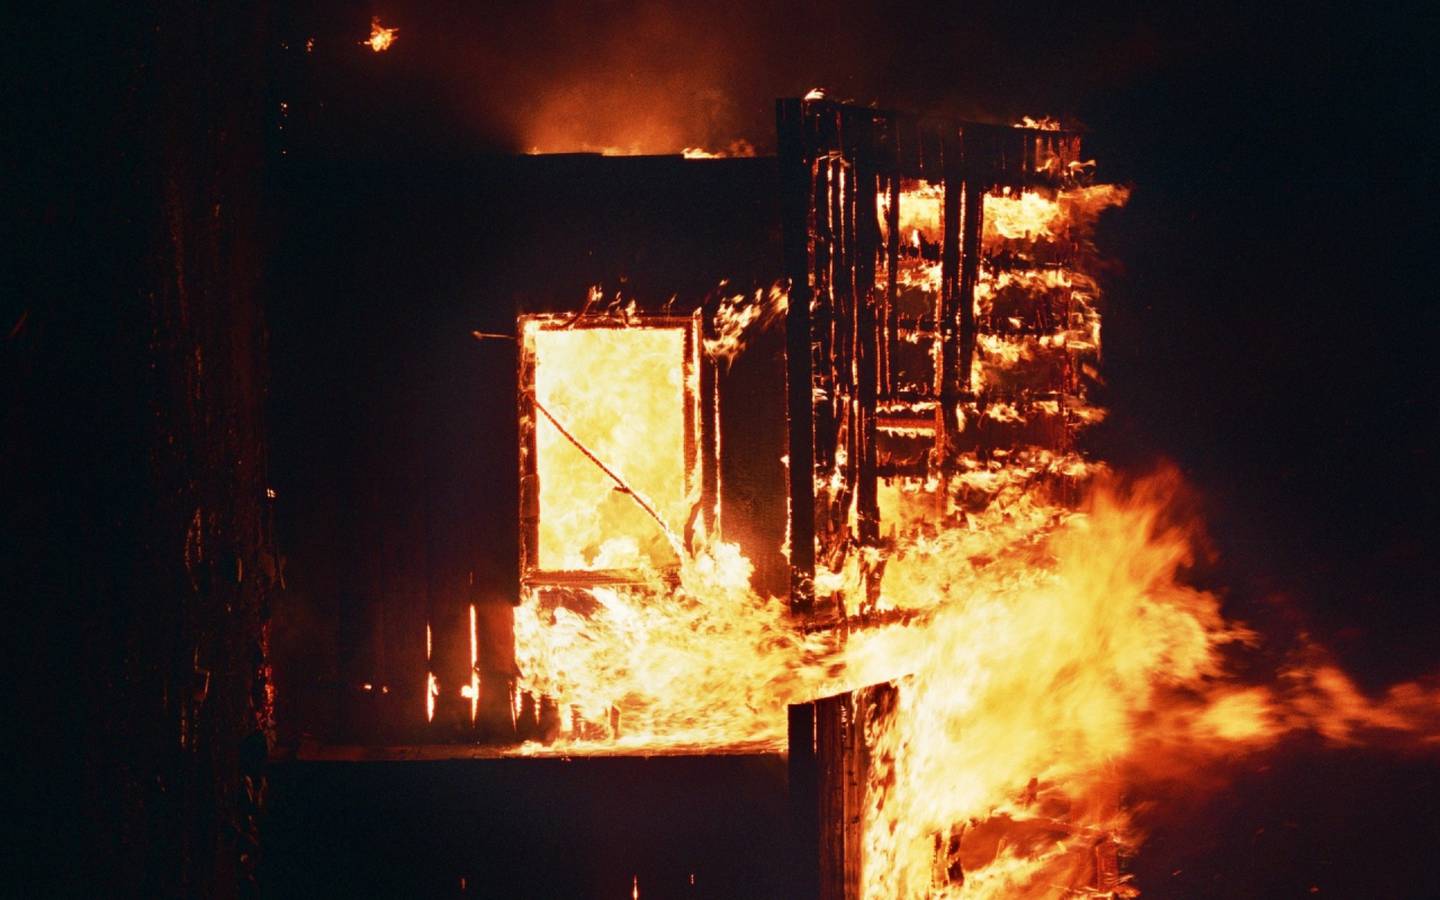 Una casa en llamas, completamente destruída. Foto nocturna.